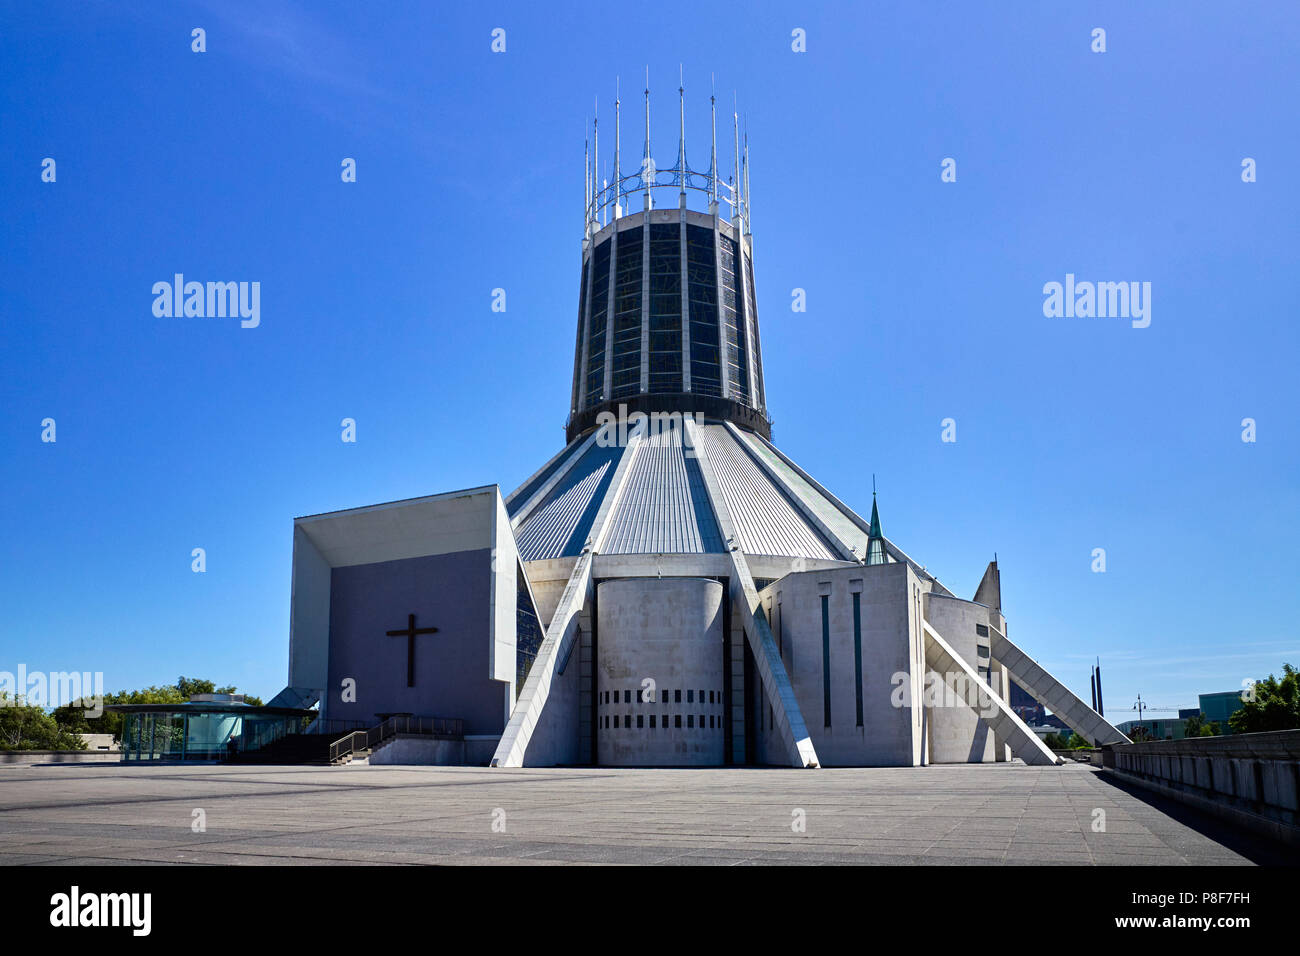 Liverpool katholische Kathedrale von der Rückseite gegen einen blauen Himmel gesehen Stockfoto